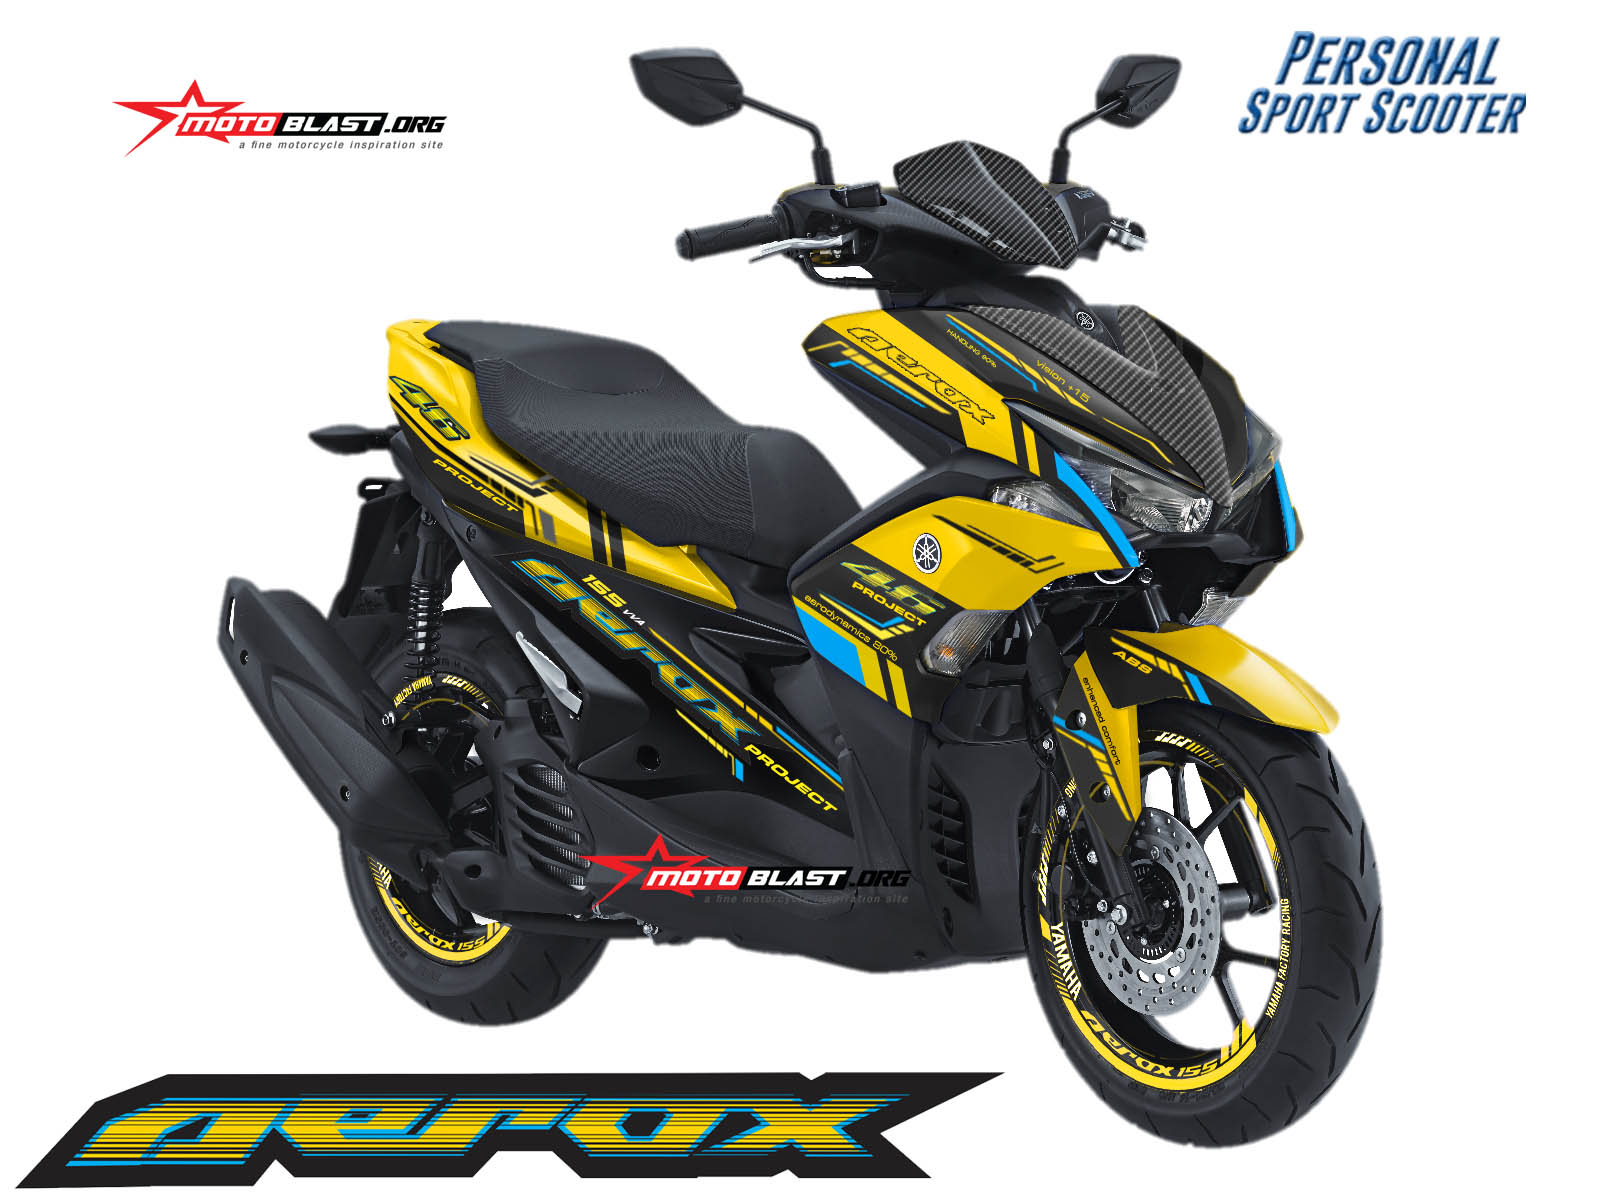 Modifikasi Aerox Warna Kuning. Modifikasi Striping untuk Yamaha Aerox 155 VVA Yellow VR46